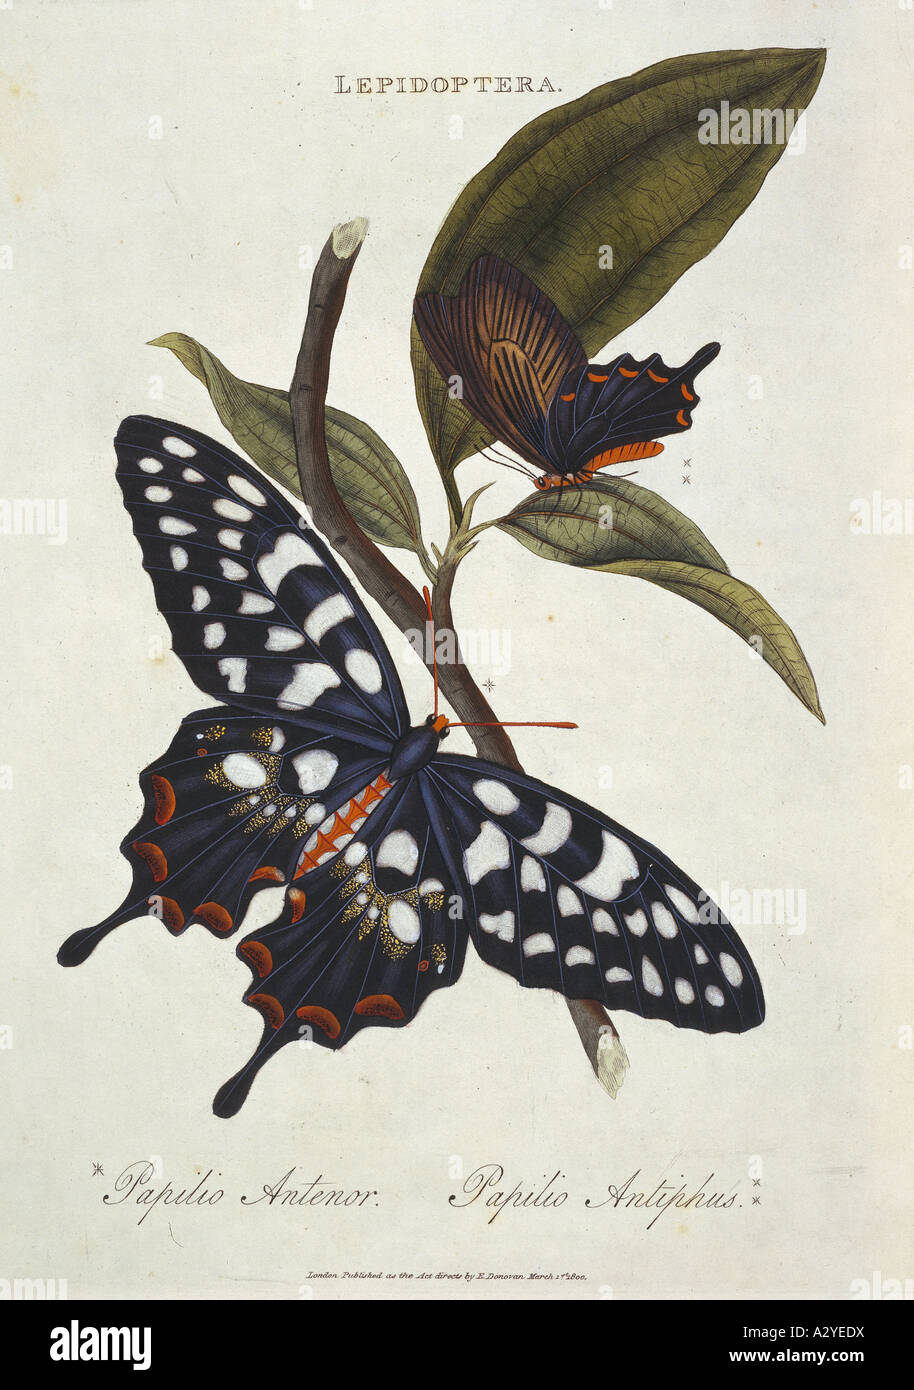 Pharmacophagus antenor giant swallowtail Stock Photo